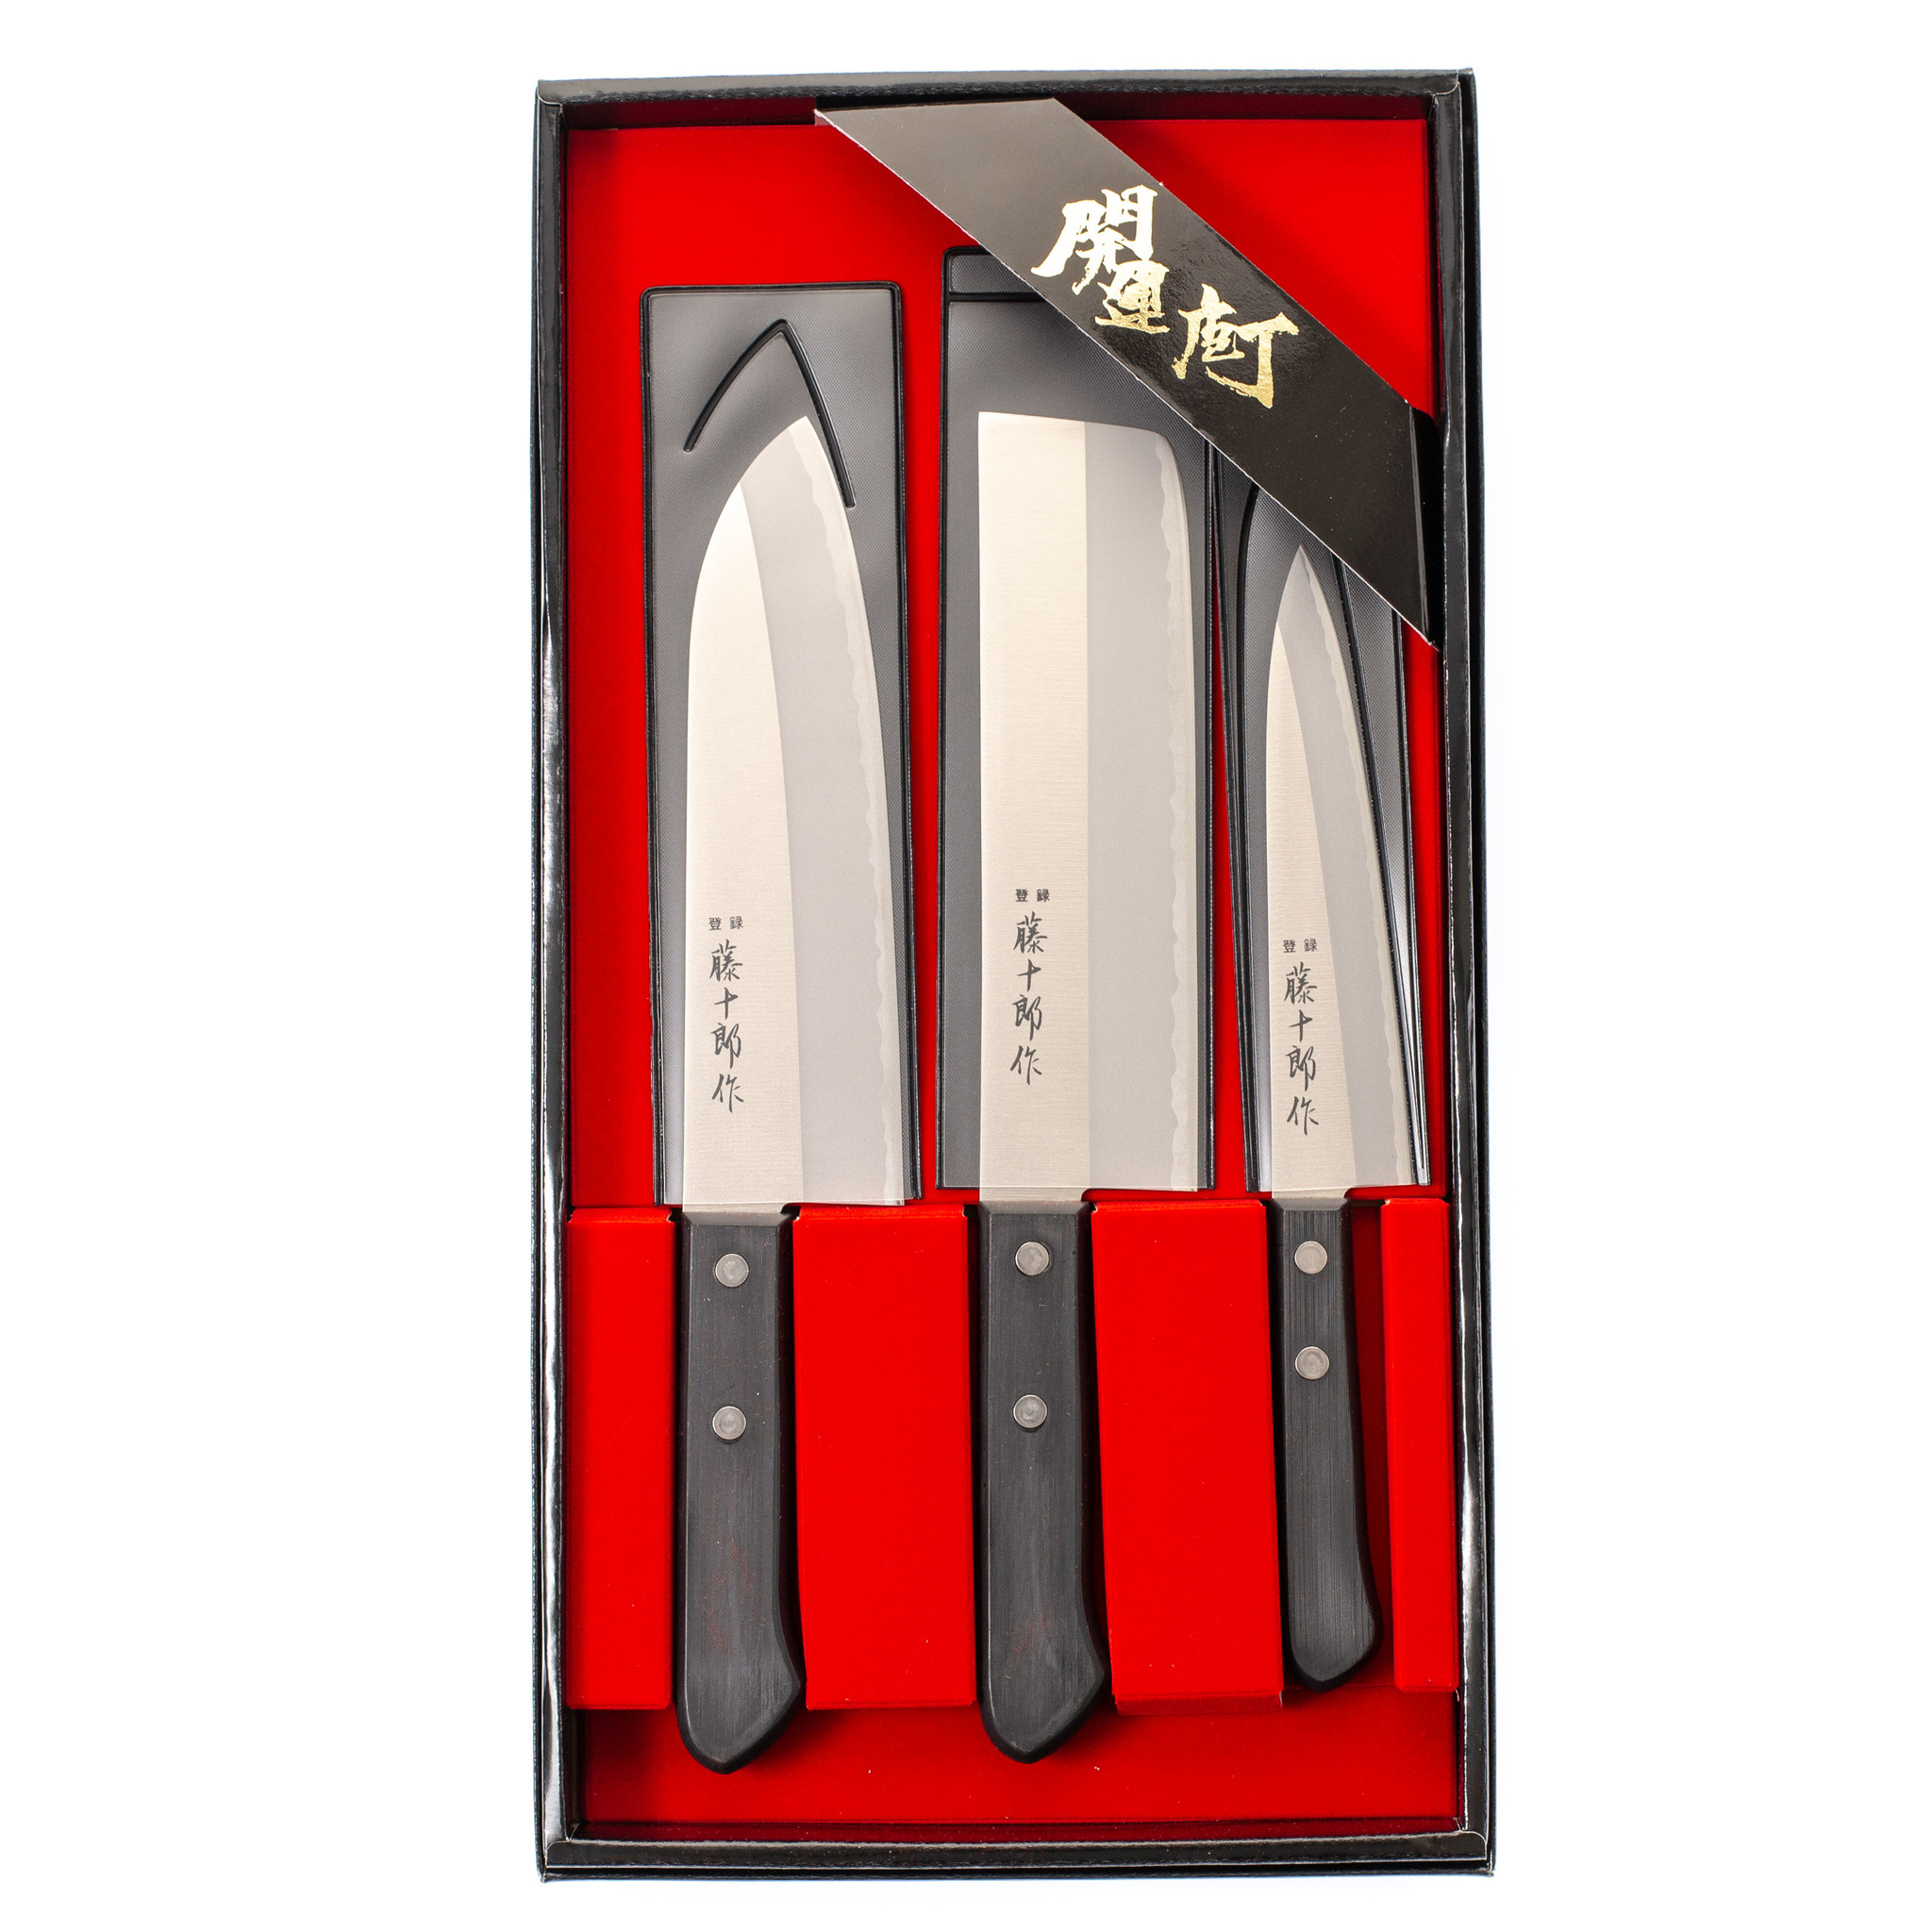 нож кухонный xin cutlery xc103 utility knife Набор из 3-х кухонных ножей Fuji Cutlery Tojiro, заточка #3000